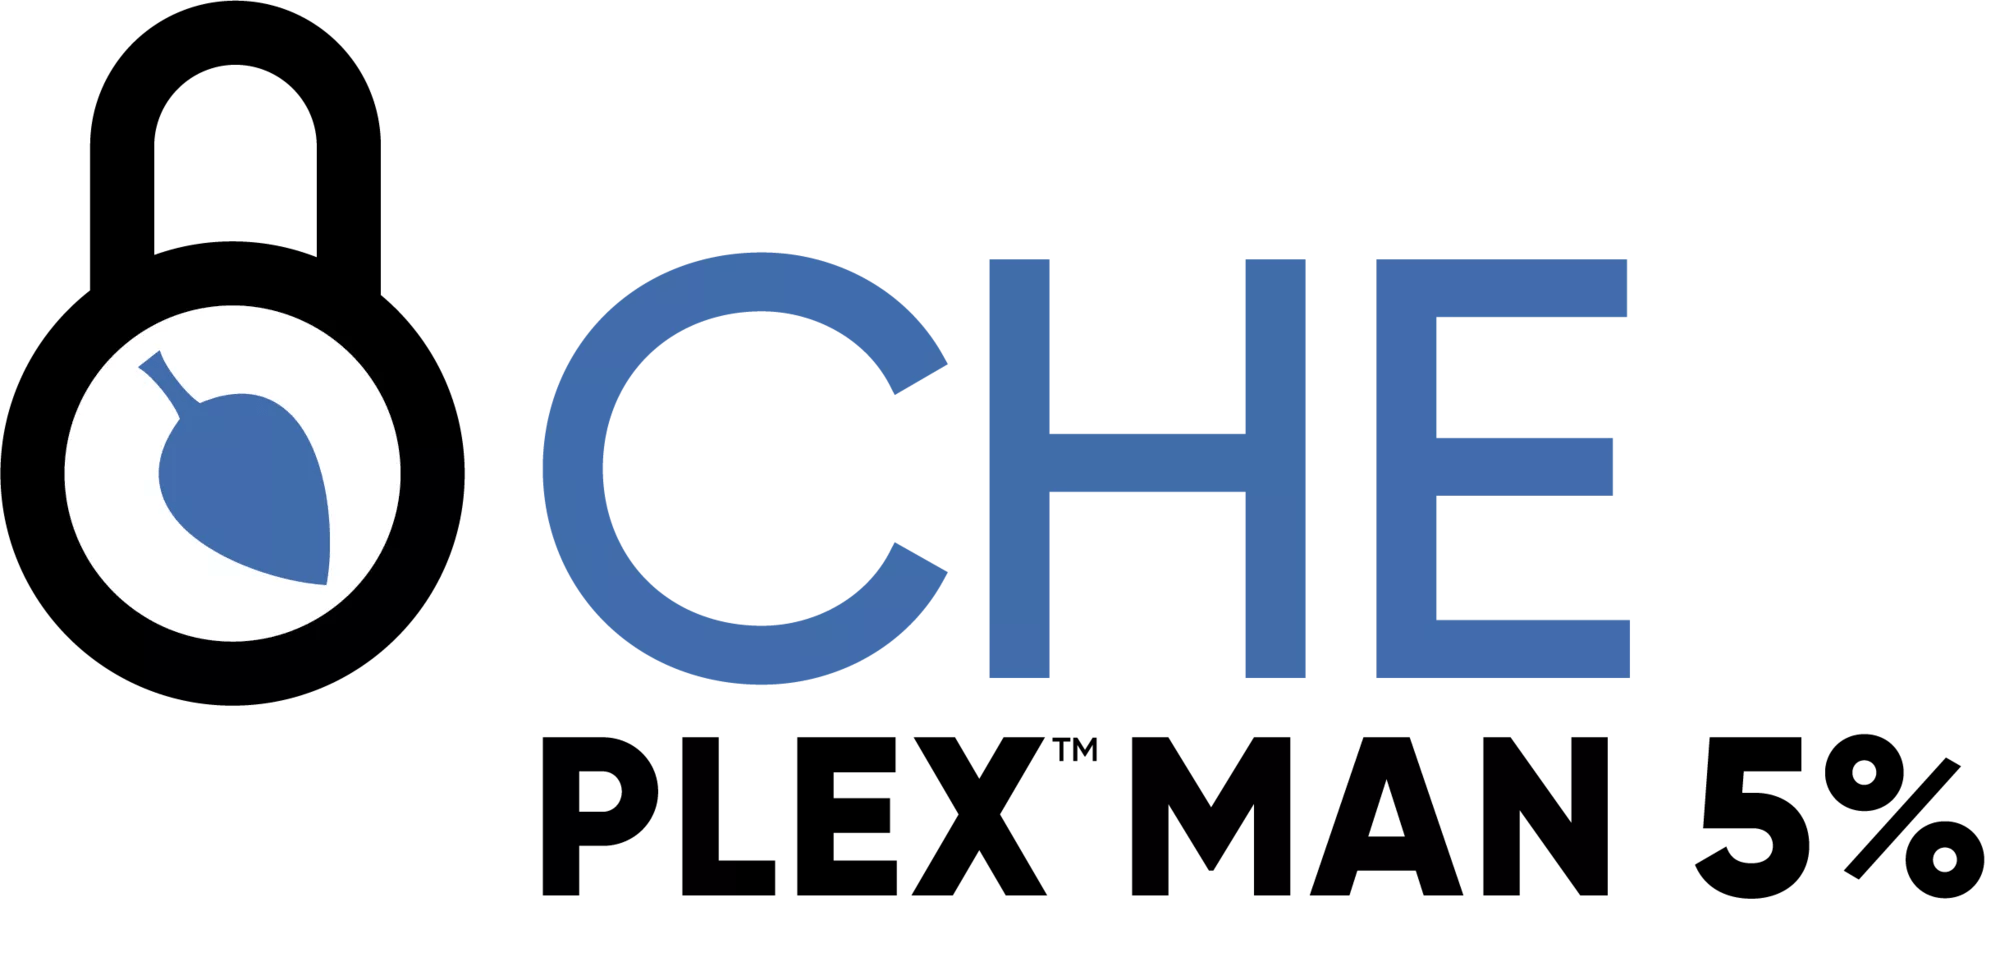 Che-Plex Man 5% 5-0-0